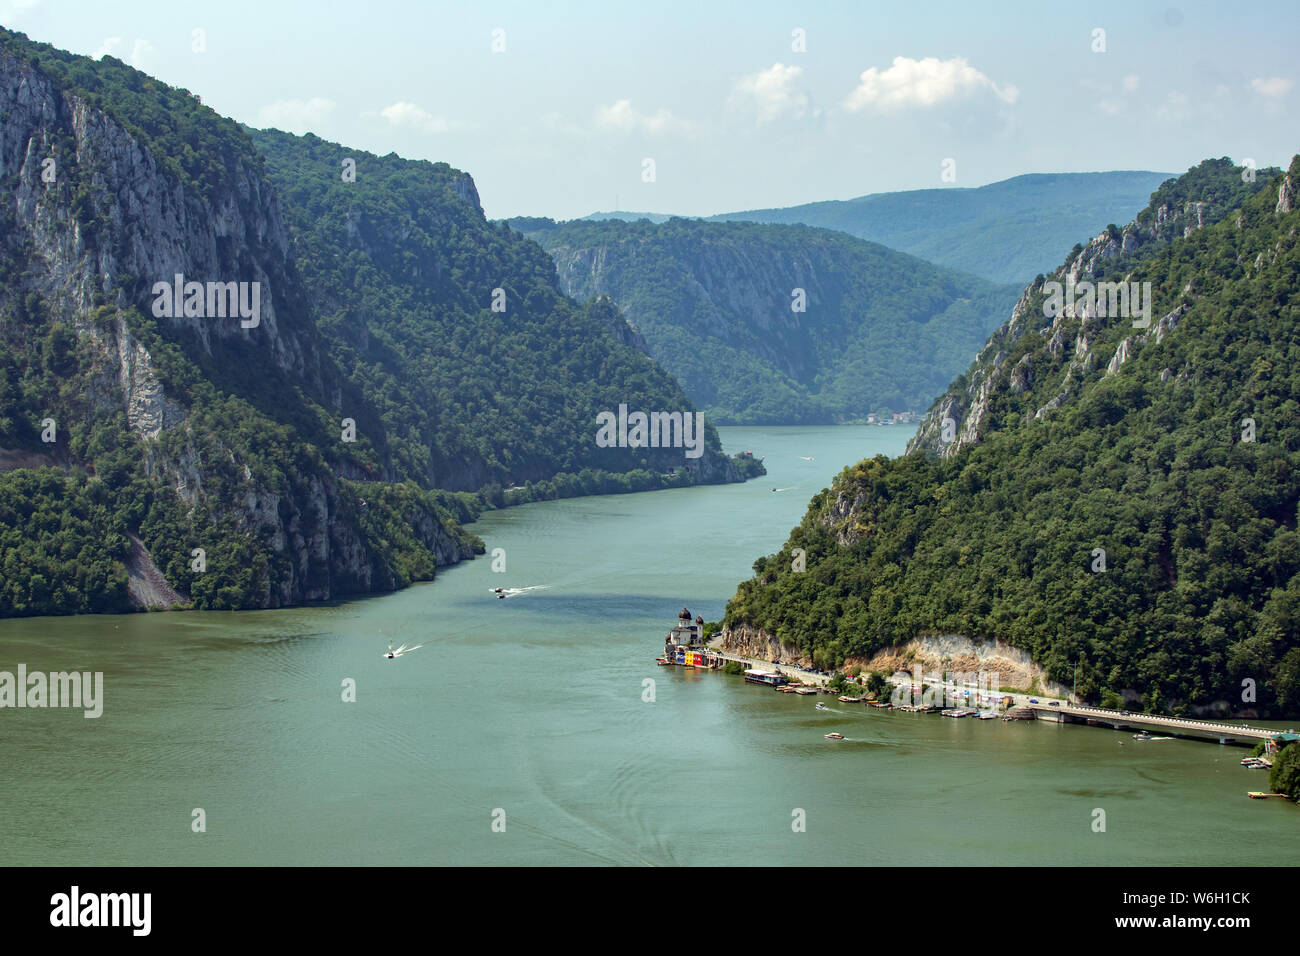 Iron Gates Gorge, Danube River, Serbia Stock Photo